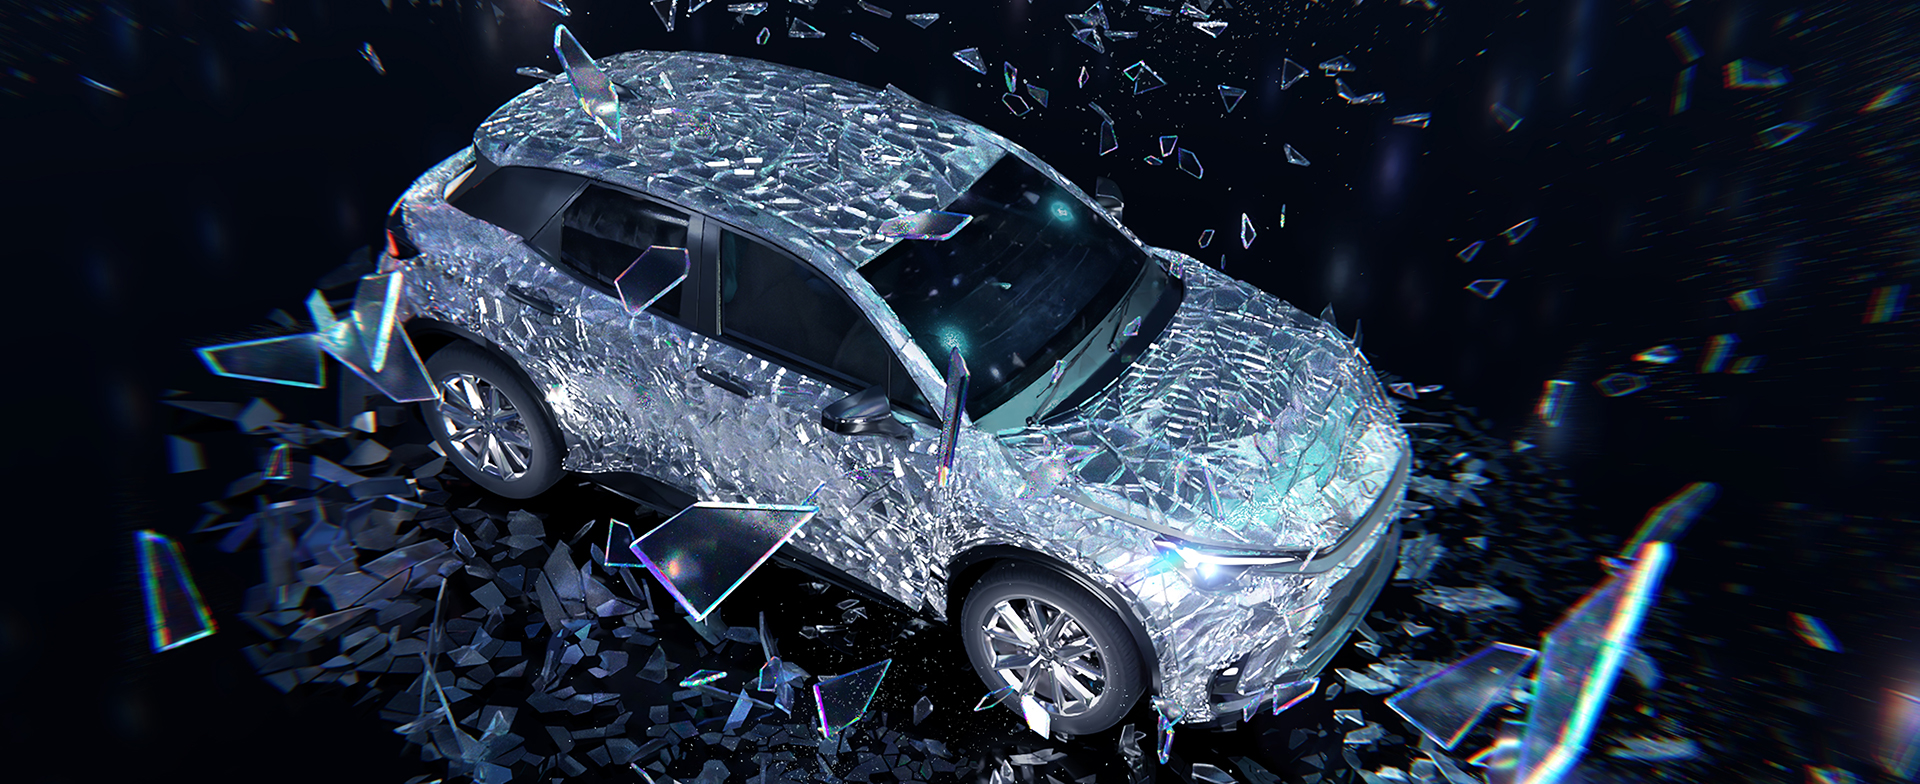 El ponferradino Javier Prado entre los finalistas del concurso Lexus Art Car con un innovador diseño en cristal 2